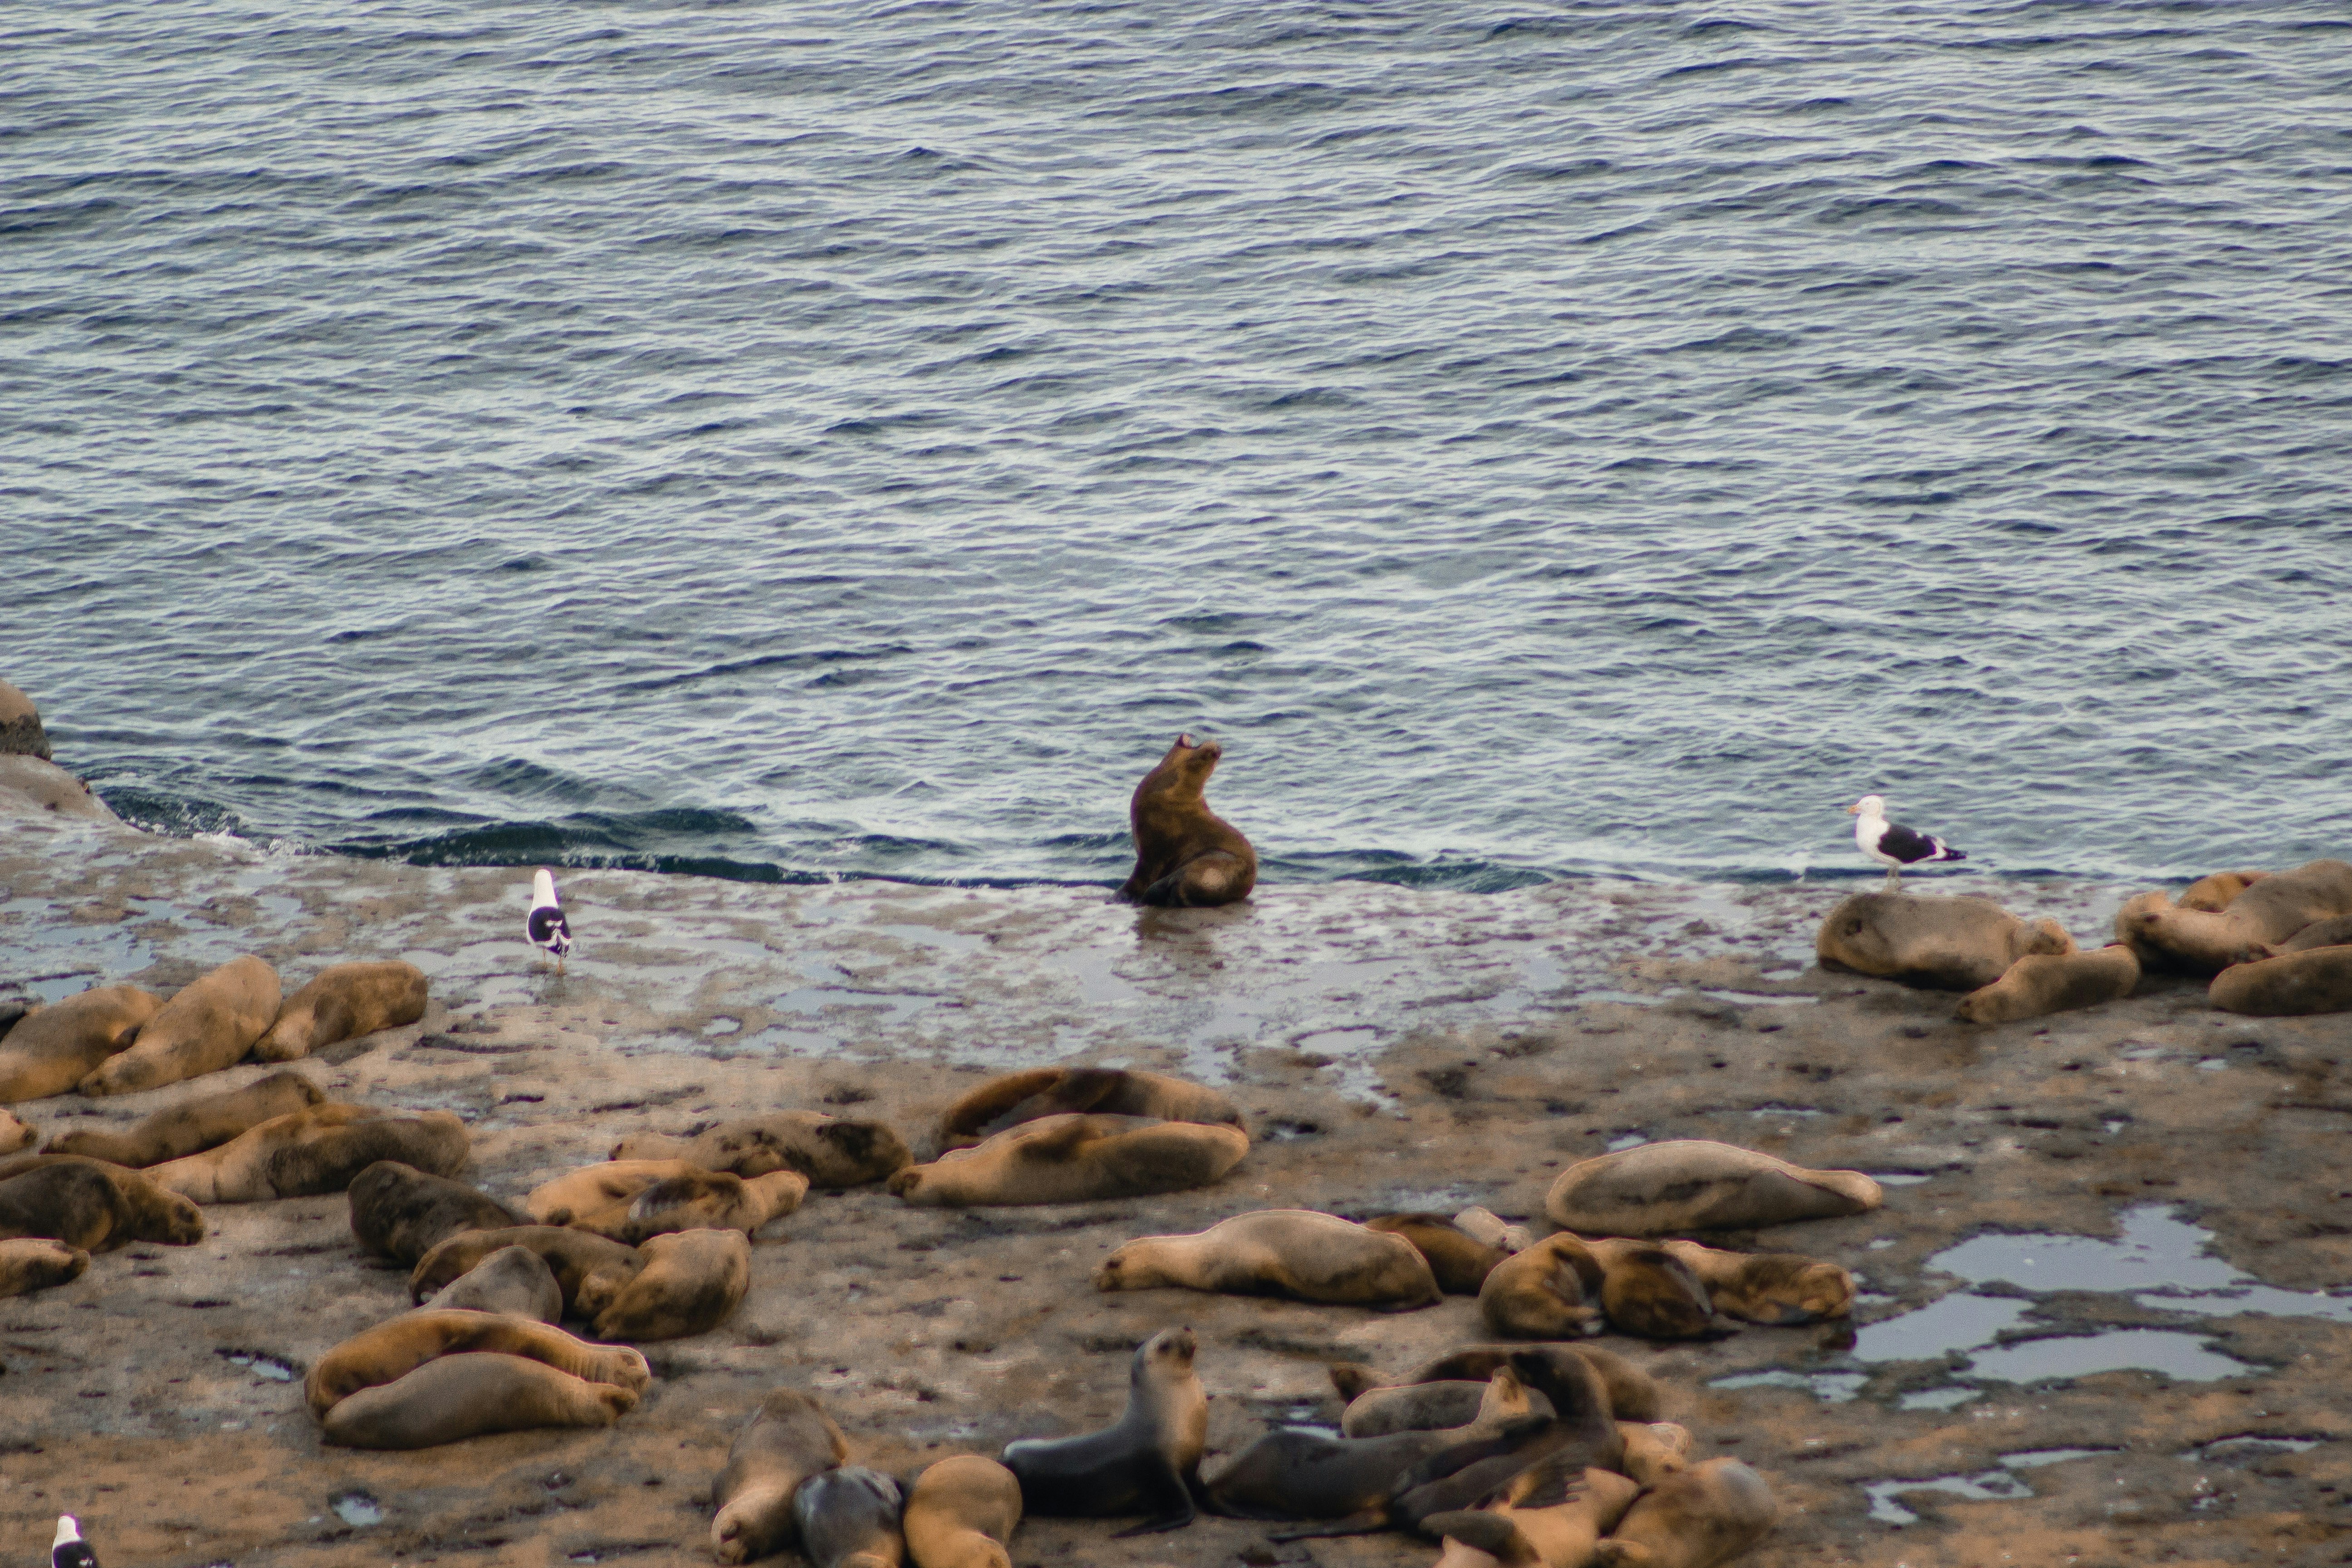 A seal lion near the ocean.